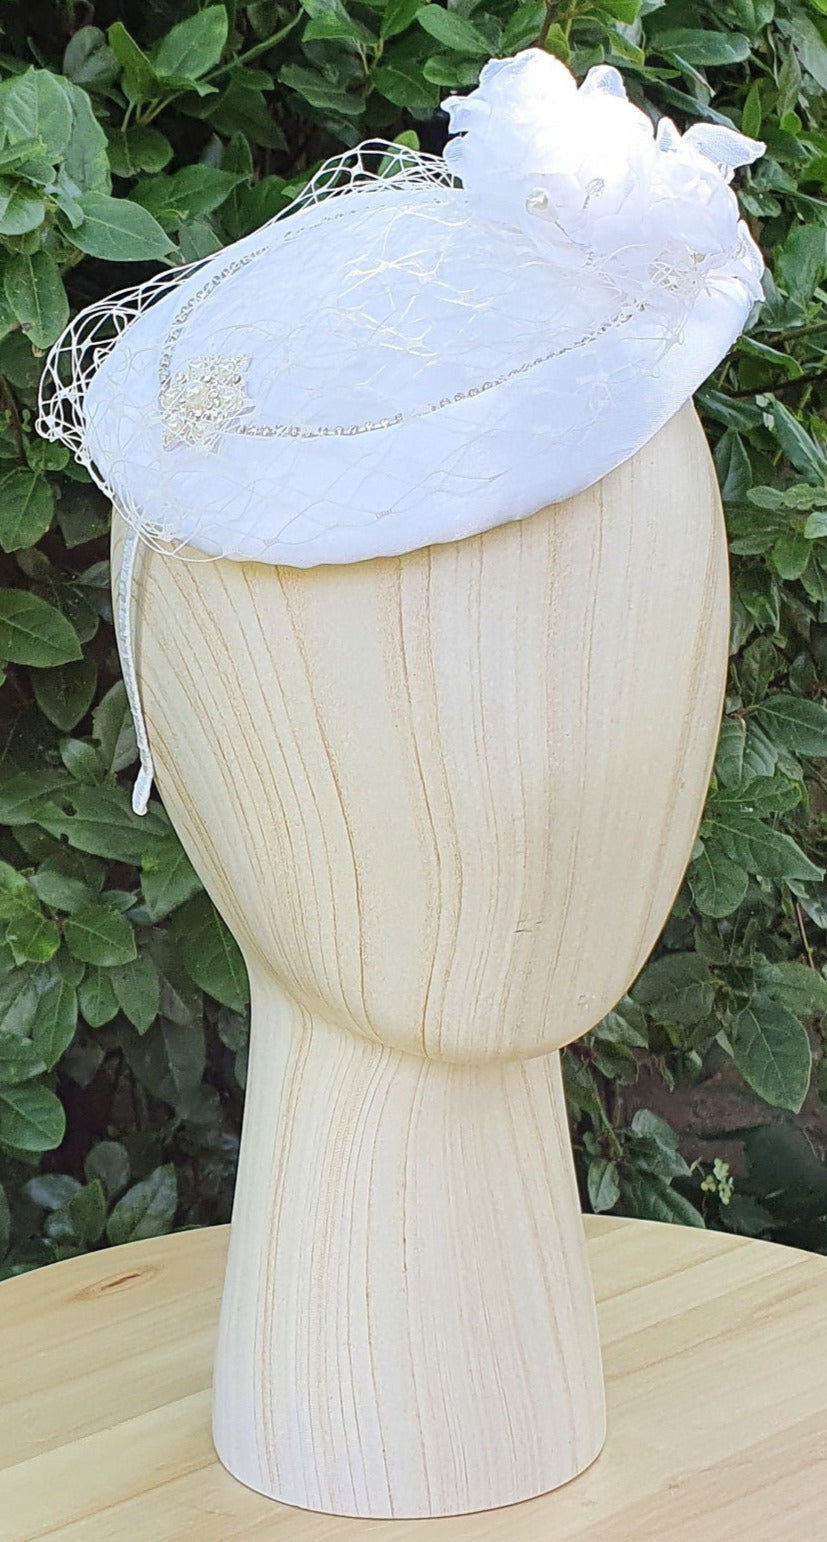 Handgemaakte ronde witte fascinator millinery van bloem  met zijde , kant  sluier, satijnen stof, parels,   broche met parels en steentjes